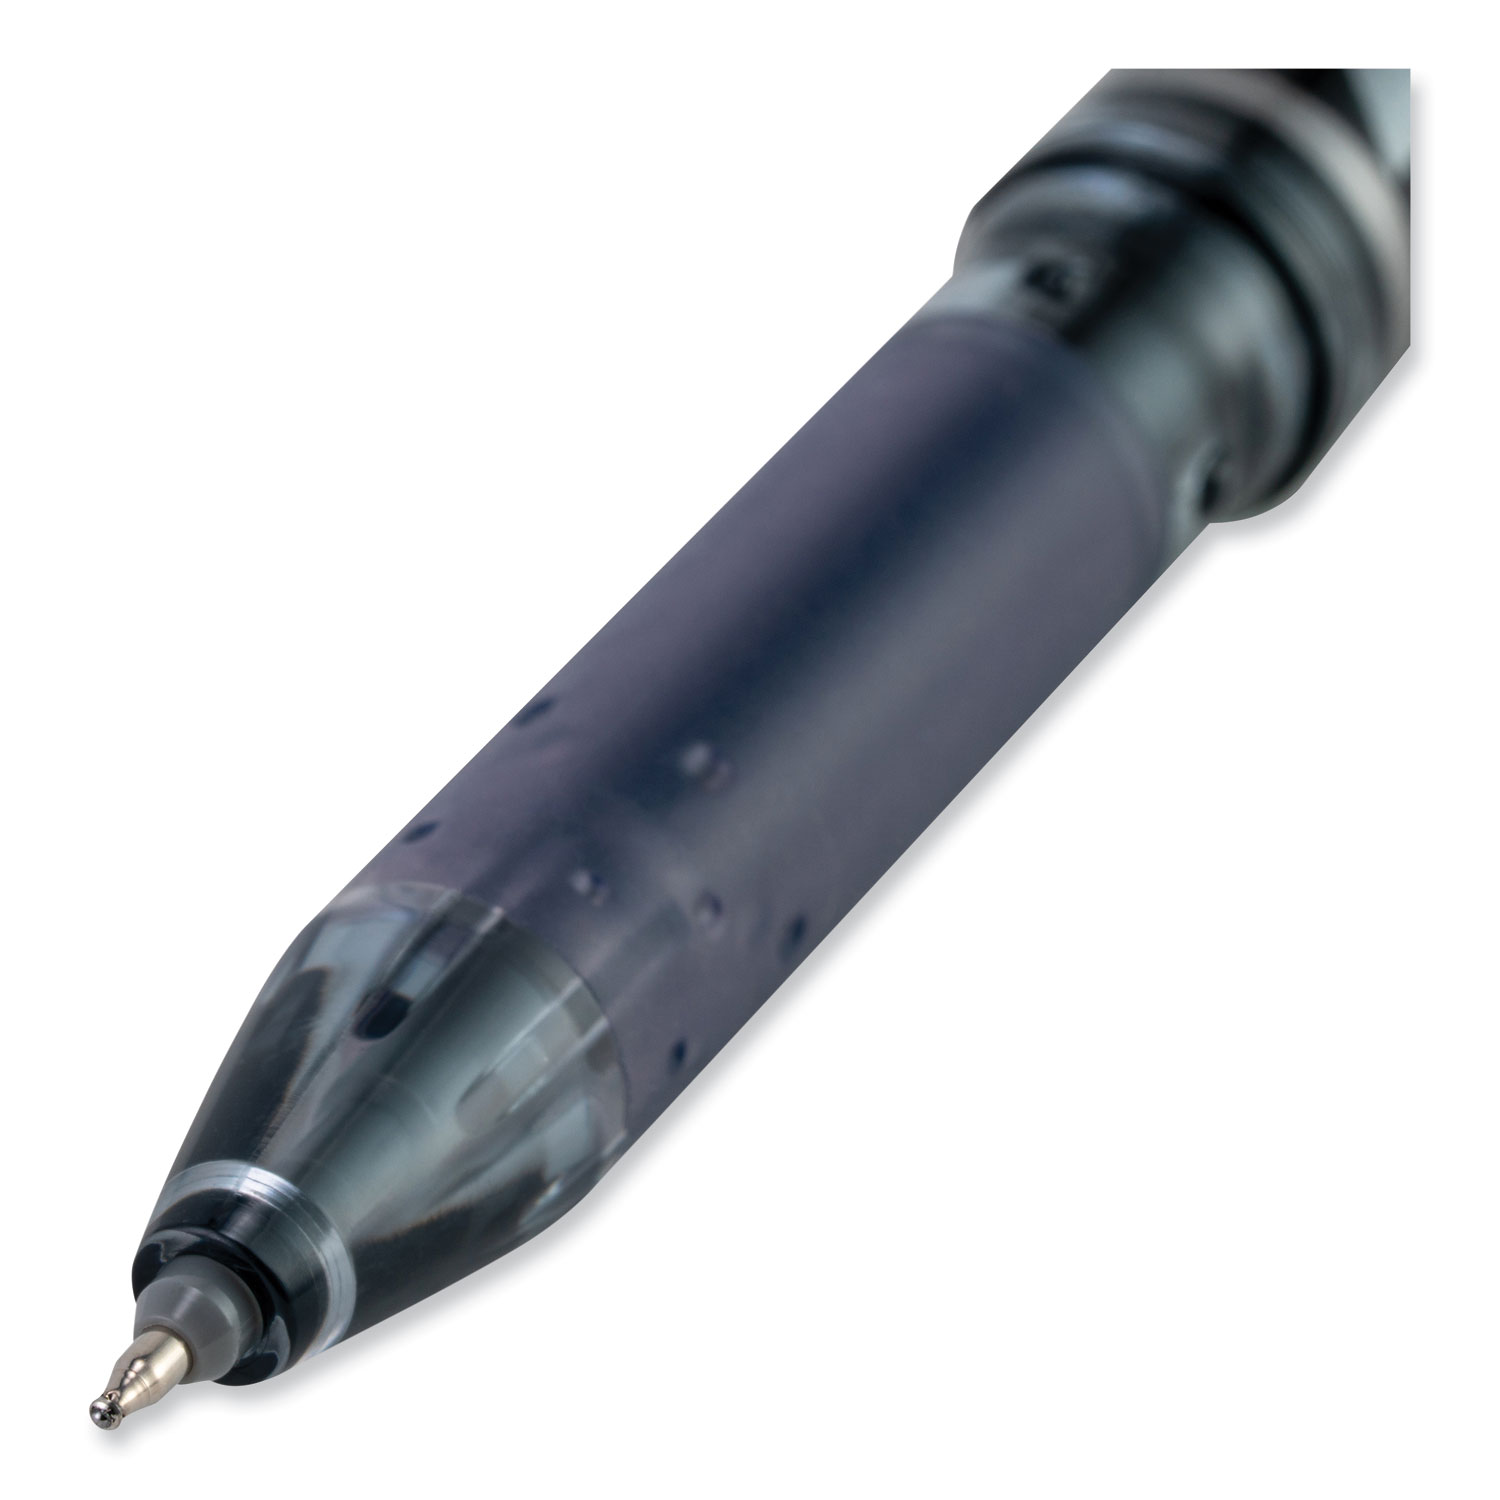 FriXion Point Erasable Gel Pen by Pilot® PIL31574